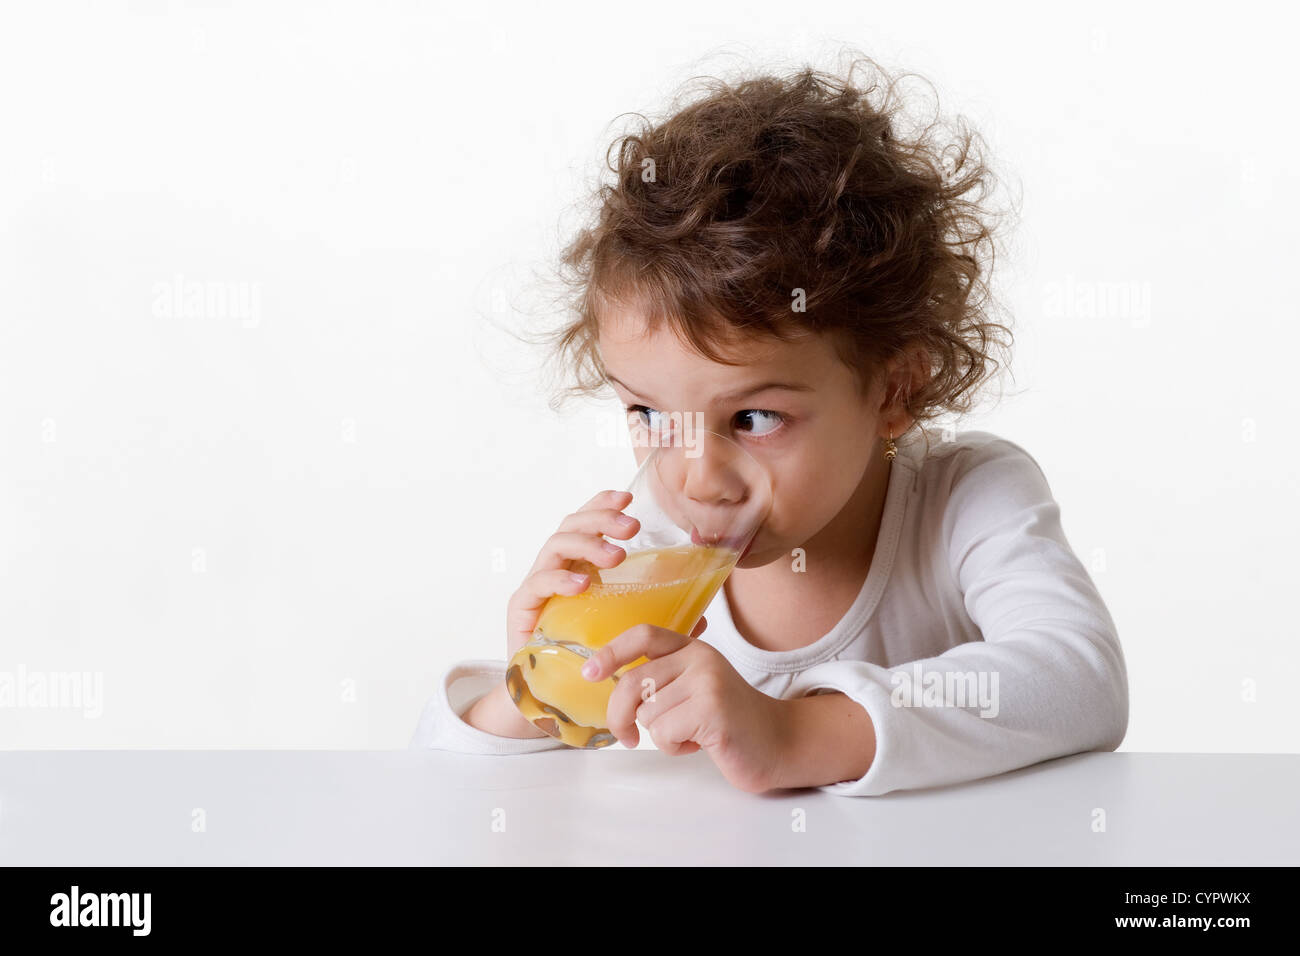 Kaukasische Mädchen, ca. 5-6 Jahre alt, braune Augen, lockiges Haar, trinkt ein Glas Orangensaft, isoliert auf weißem Hintergrund Stockfoto